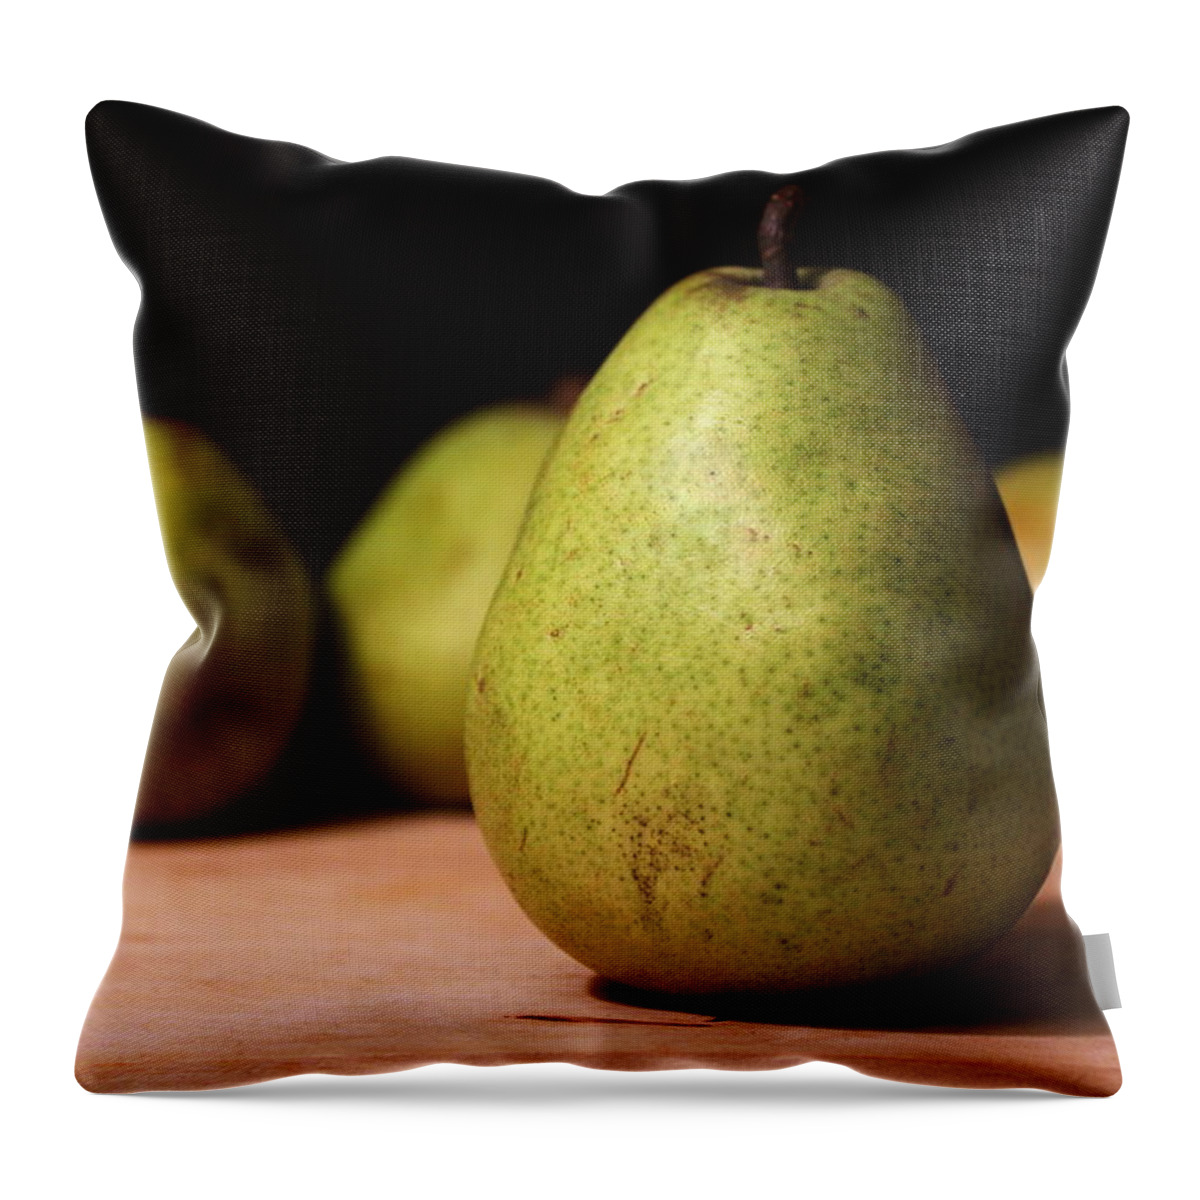 Skompski Throw Pillow featuring the photograph D'anjou Pears by Joseph Skompski